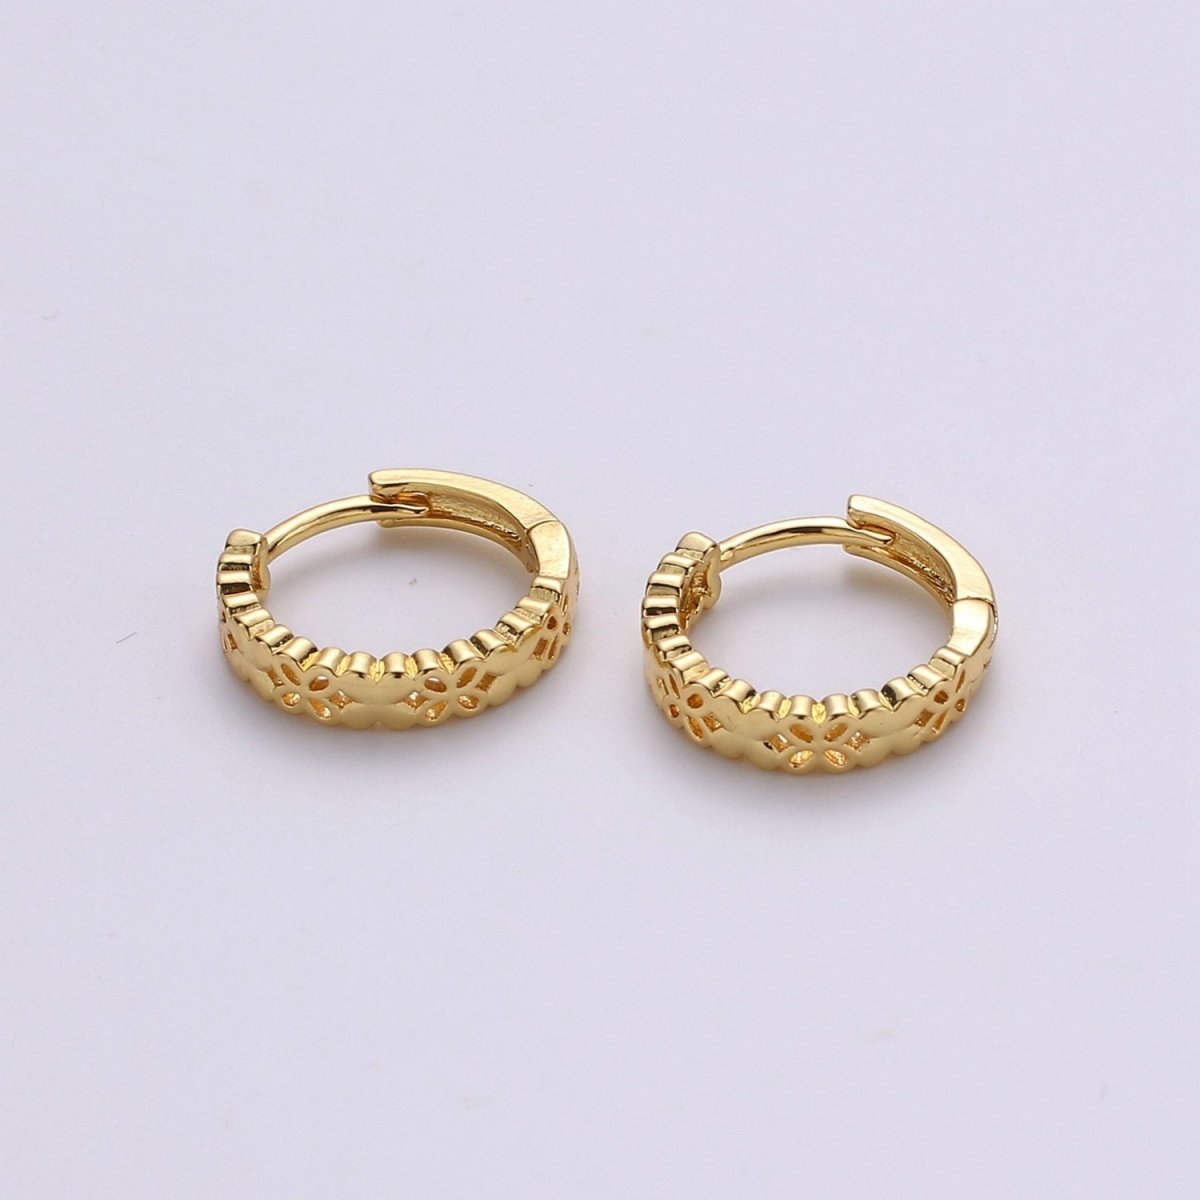 24k Vermeil Gold Earrings, Huggie Earring, Tiny Earrings, Flower Earrings, Handmade Earrings, Everyday Wear Earrings, Rosegold Earring - DLUXCA